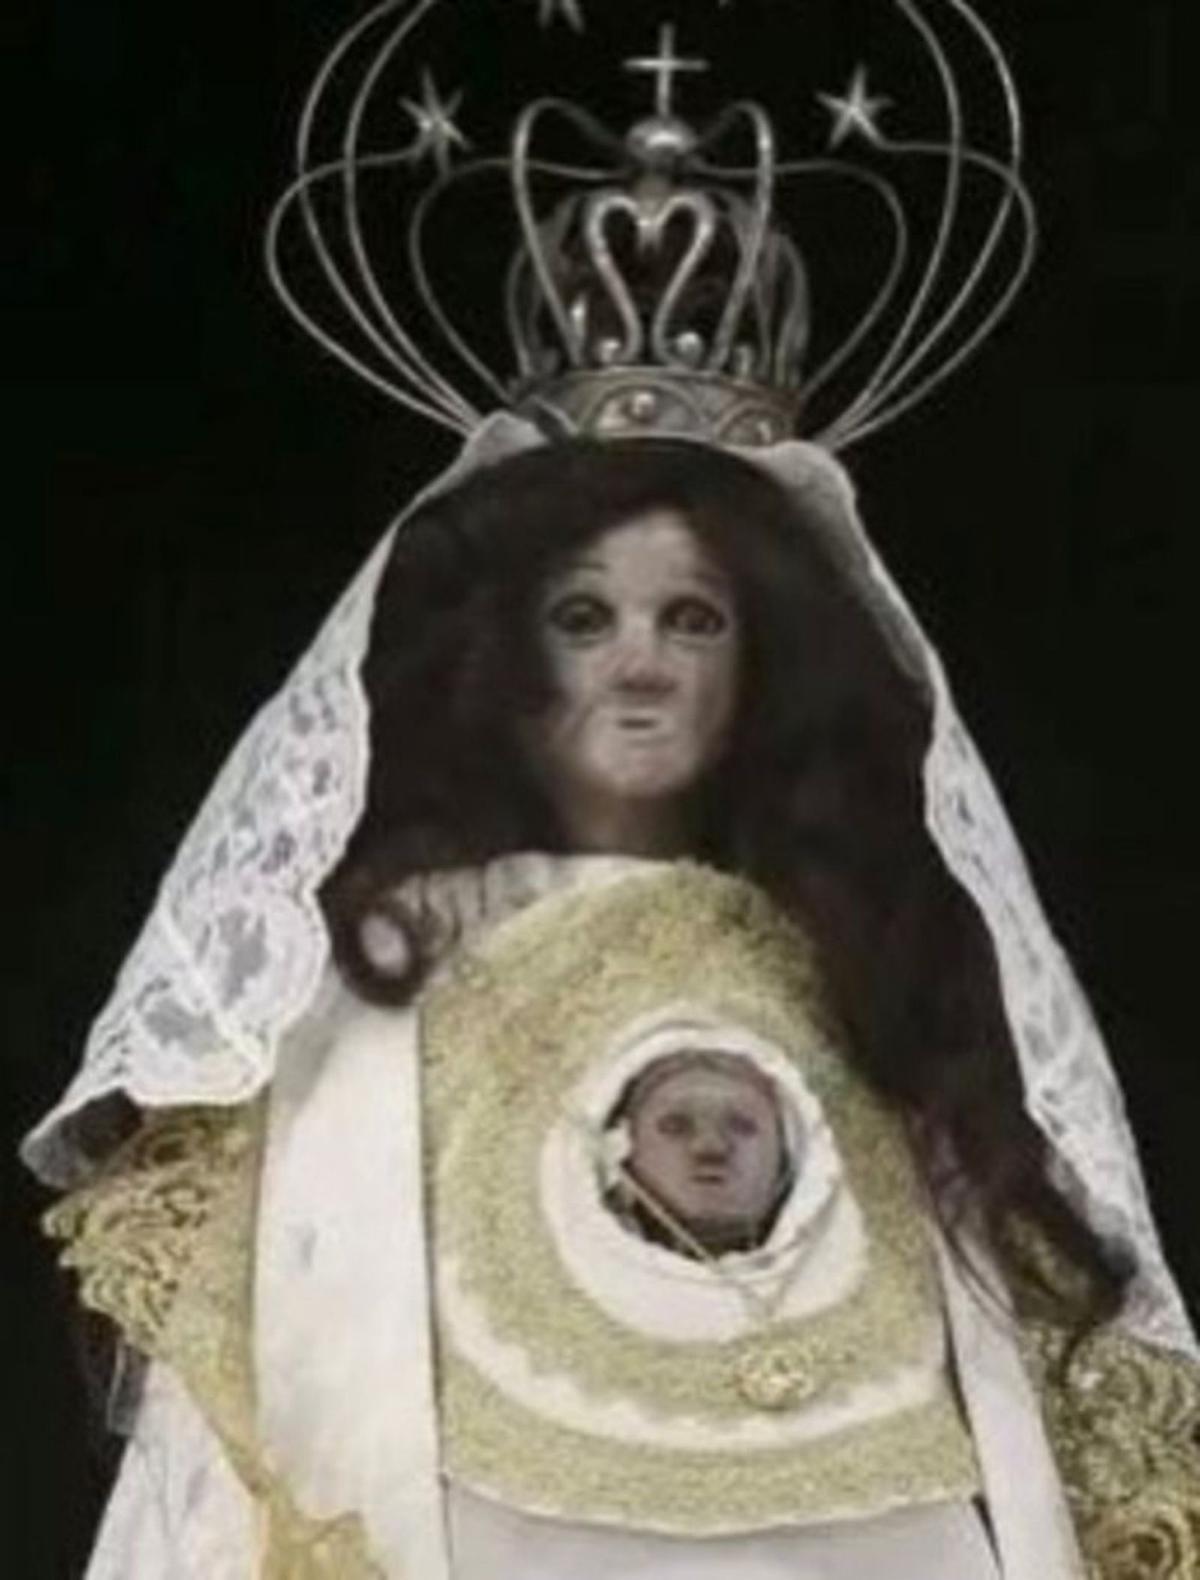 Defensa do Patrimonio evita que una Virgen ferrolana sea el nuevo ‘Ecce Homo’ de Borja